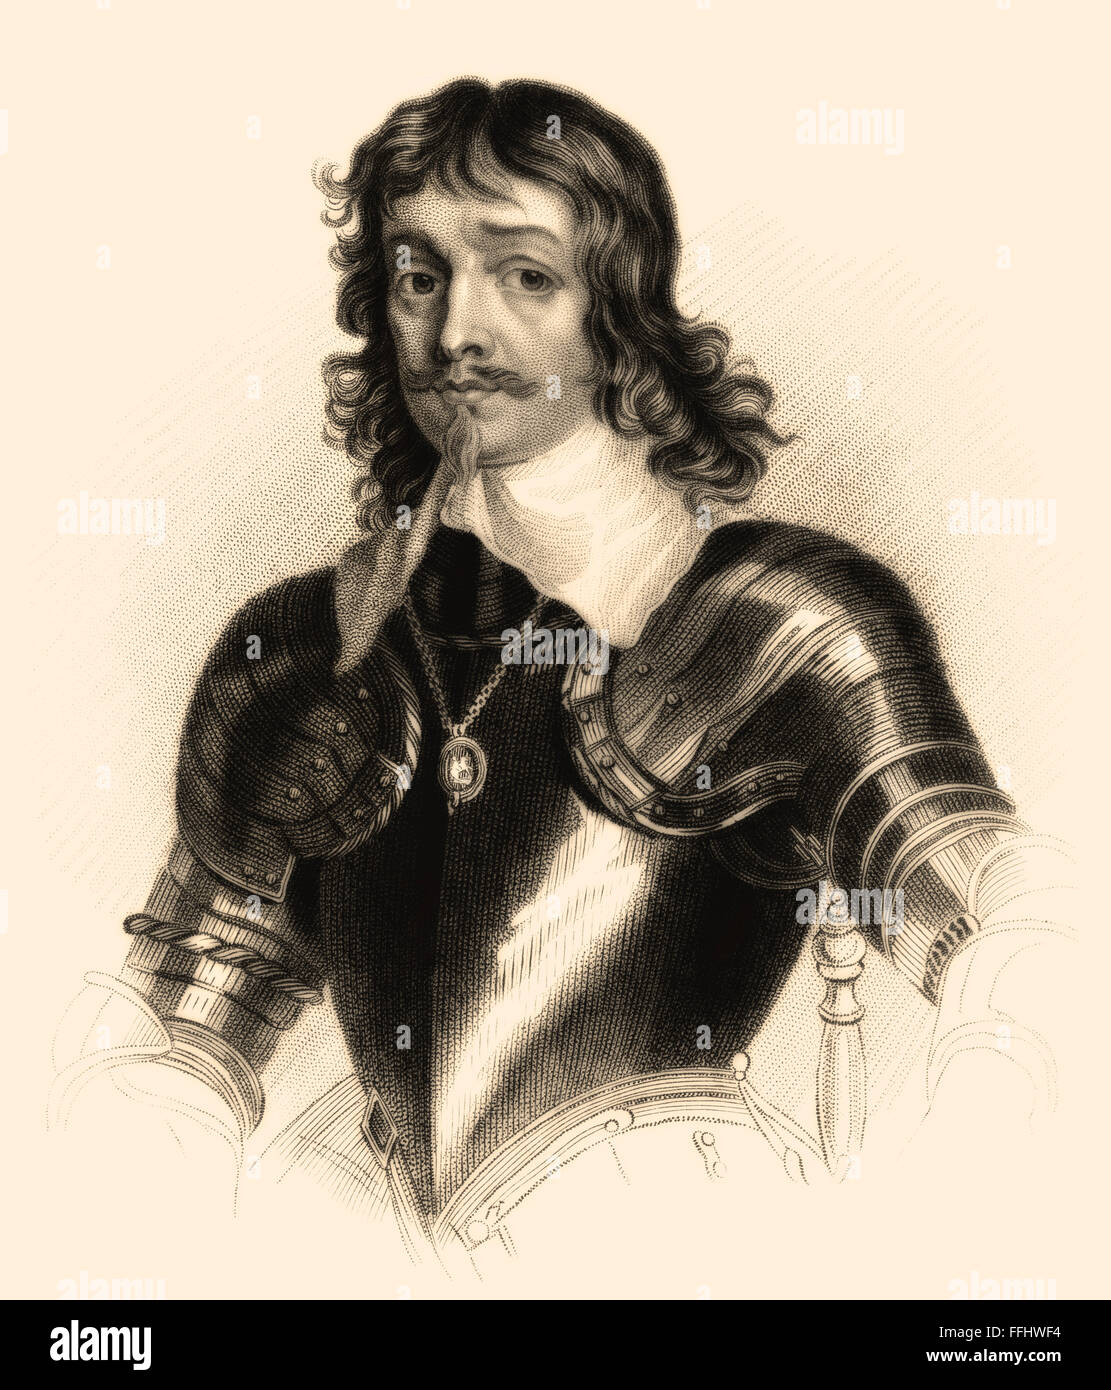 James Hamilton, primo duca di Hamilton, 1606-1649, un nobile scozzese, politico e leader militare durante la Guerra dei Trent'anni Foto Stock